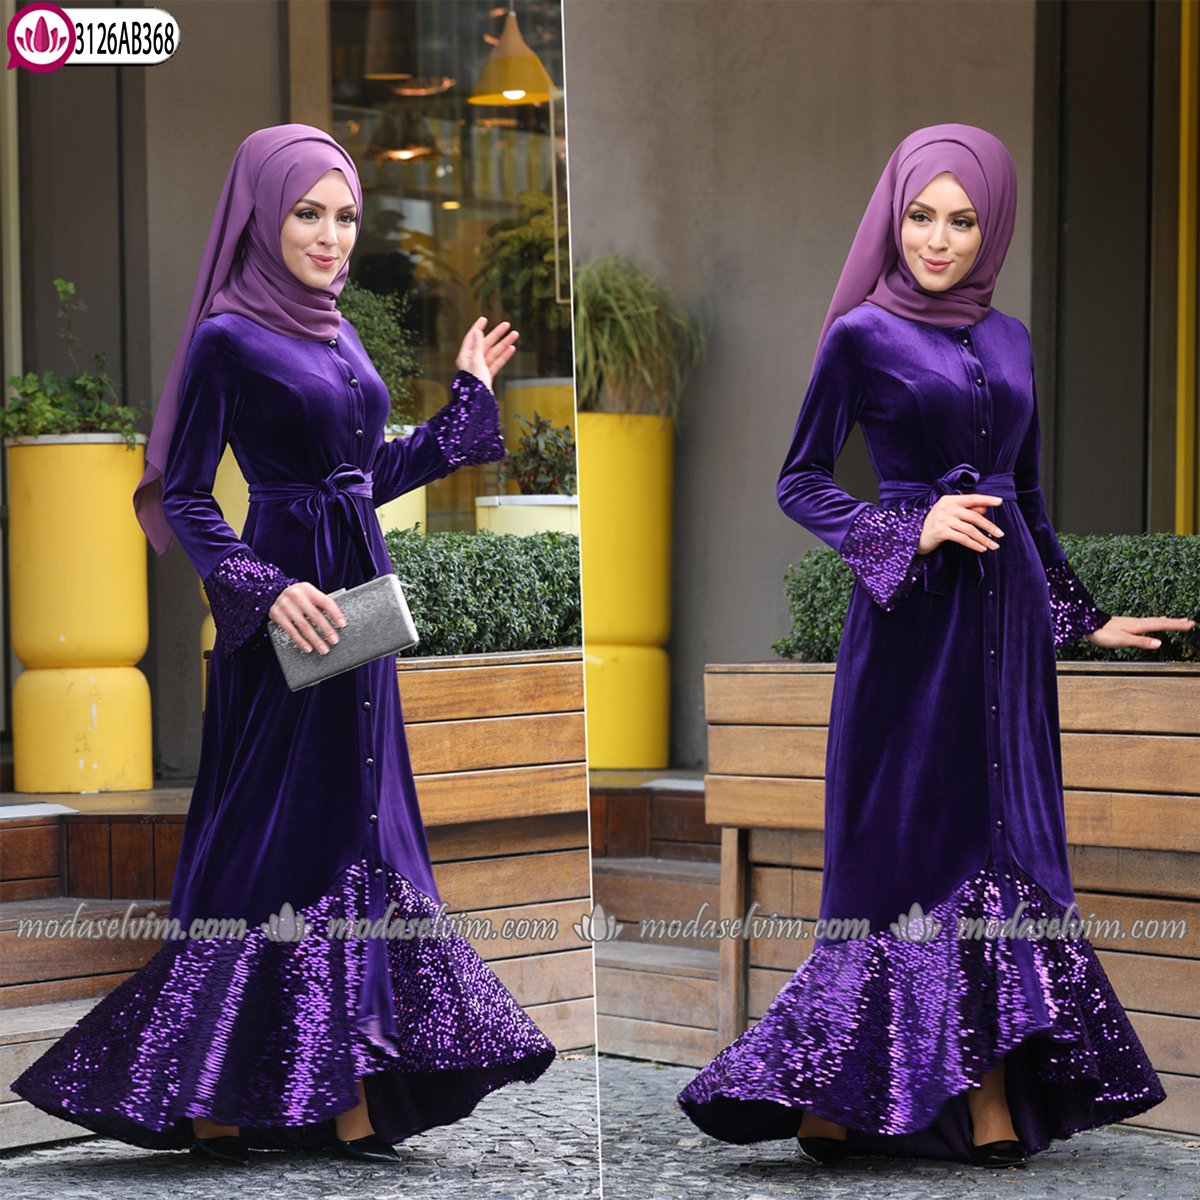 Modaselvim on X: ""2019/2020 Kadife Şıklığı" Pul Payet Kadife Tesettür  Elbise &gt;&gt; 149,90 TL Tam Kalıp 38/40/42/44/46/48 bedenli Sipariş  👉👉👉 https://t.co/of37WbYCt5 #modaselvim #modaselvimelbise #tesettur  #yenisezontesettur #hijab #jilbab ...